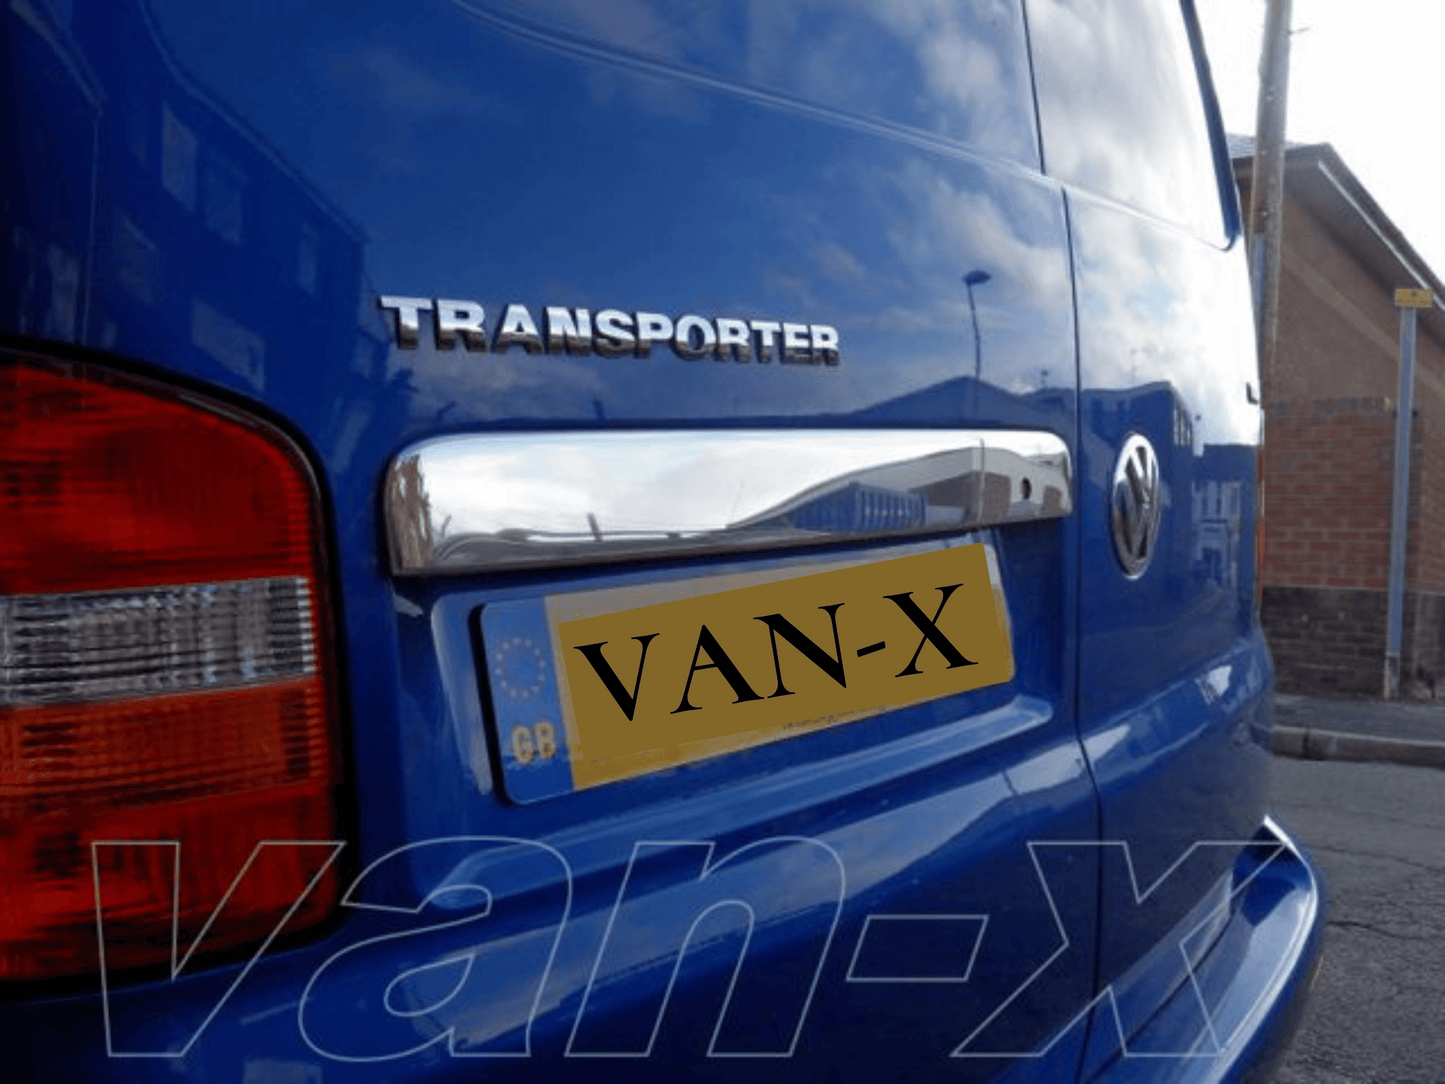 Für Van-X, Griffleiste Kennzeichenbeleuchtung, Flügeltüren Version, für VW T5 Transporter